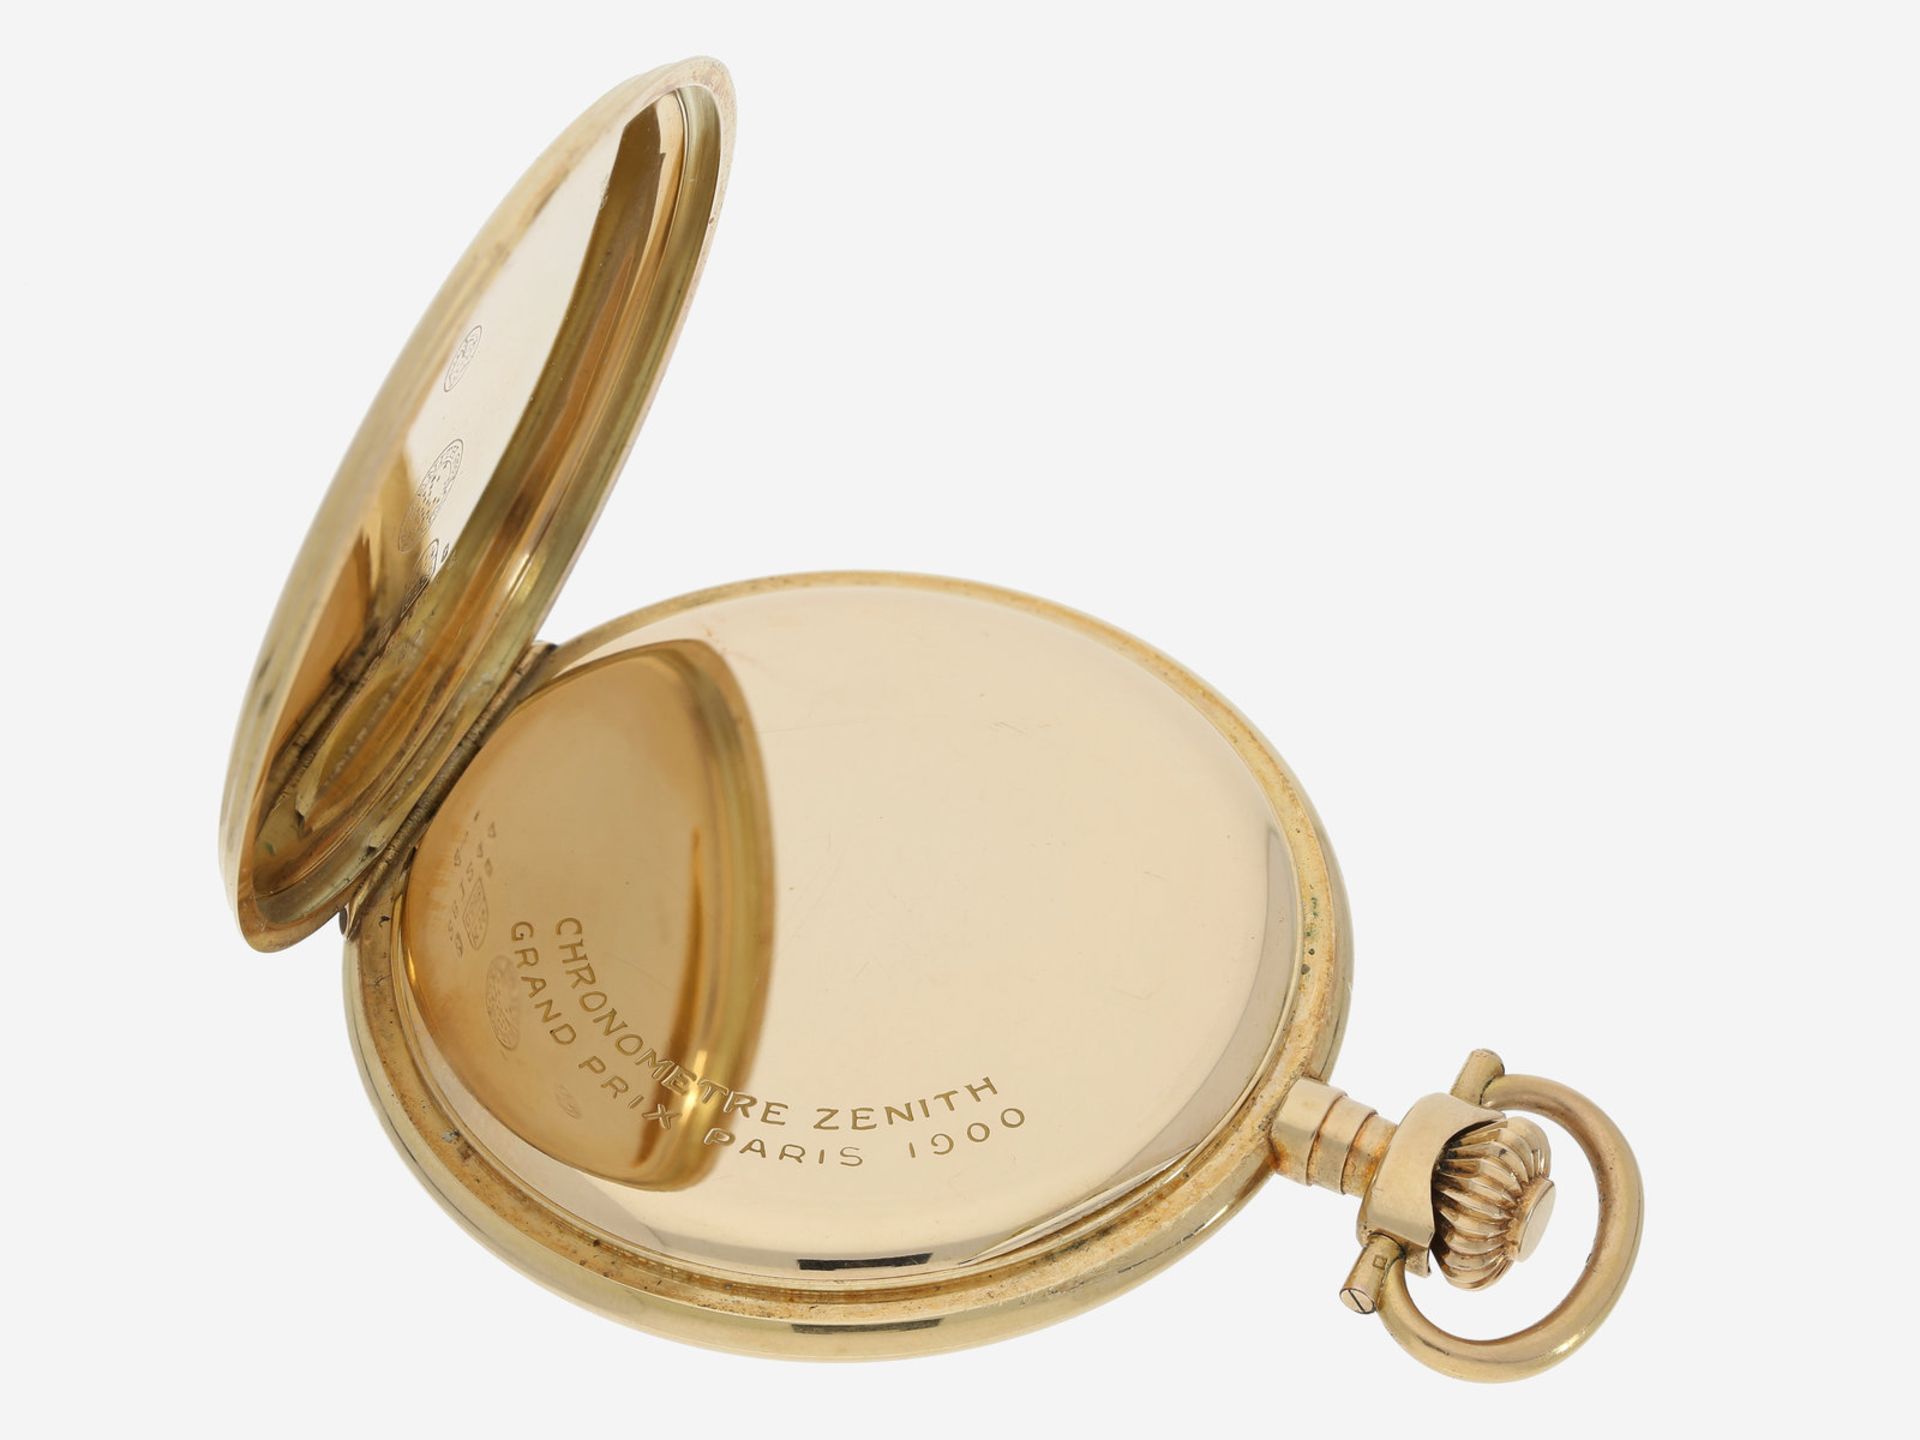 Taschenuhr: feine Zenith Goldsavonnette, seltene Chronometerqualität, vermutlich um 1920Ca. Ø52,5mm, - Image 3 of 4